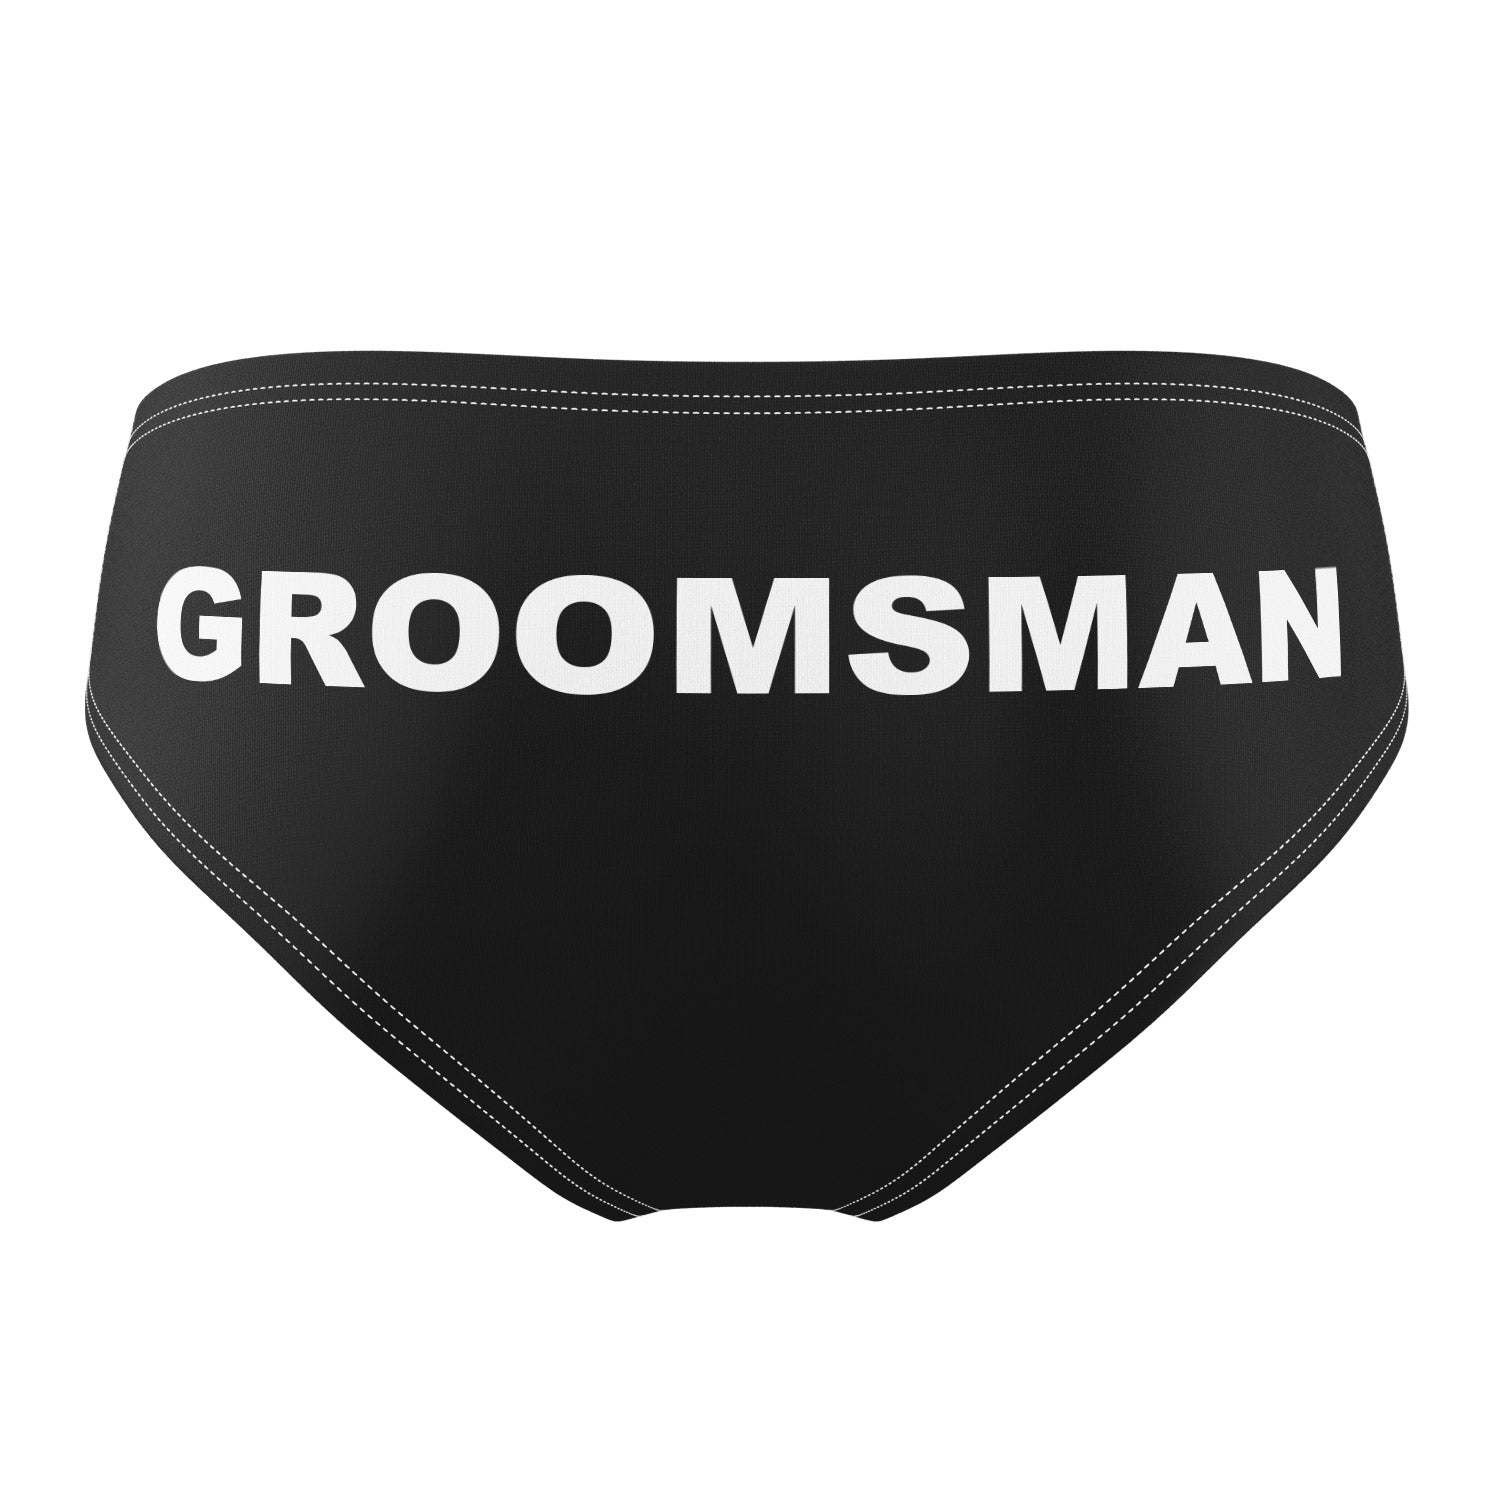 Groomsman personalised Swim Trunks